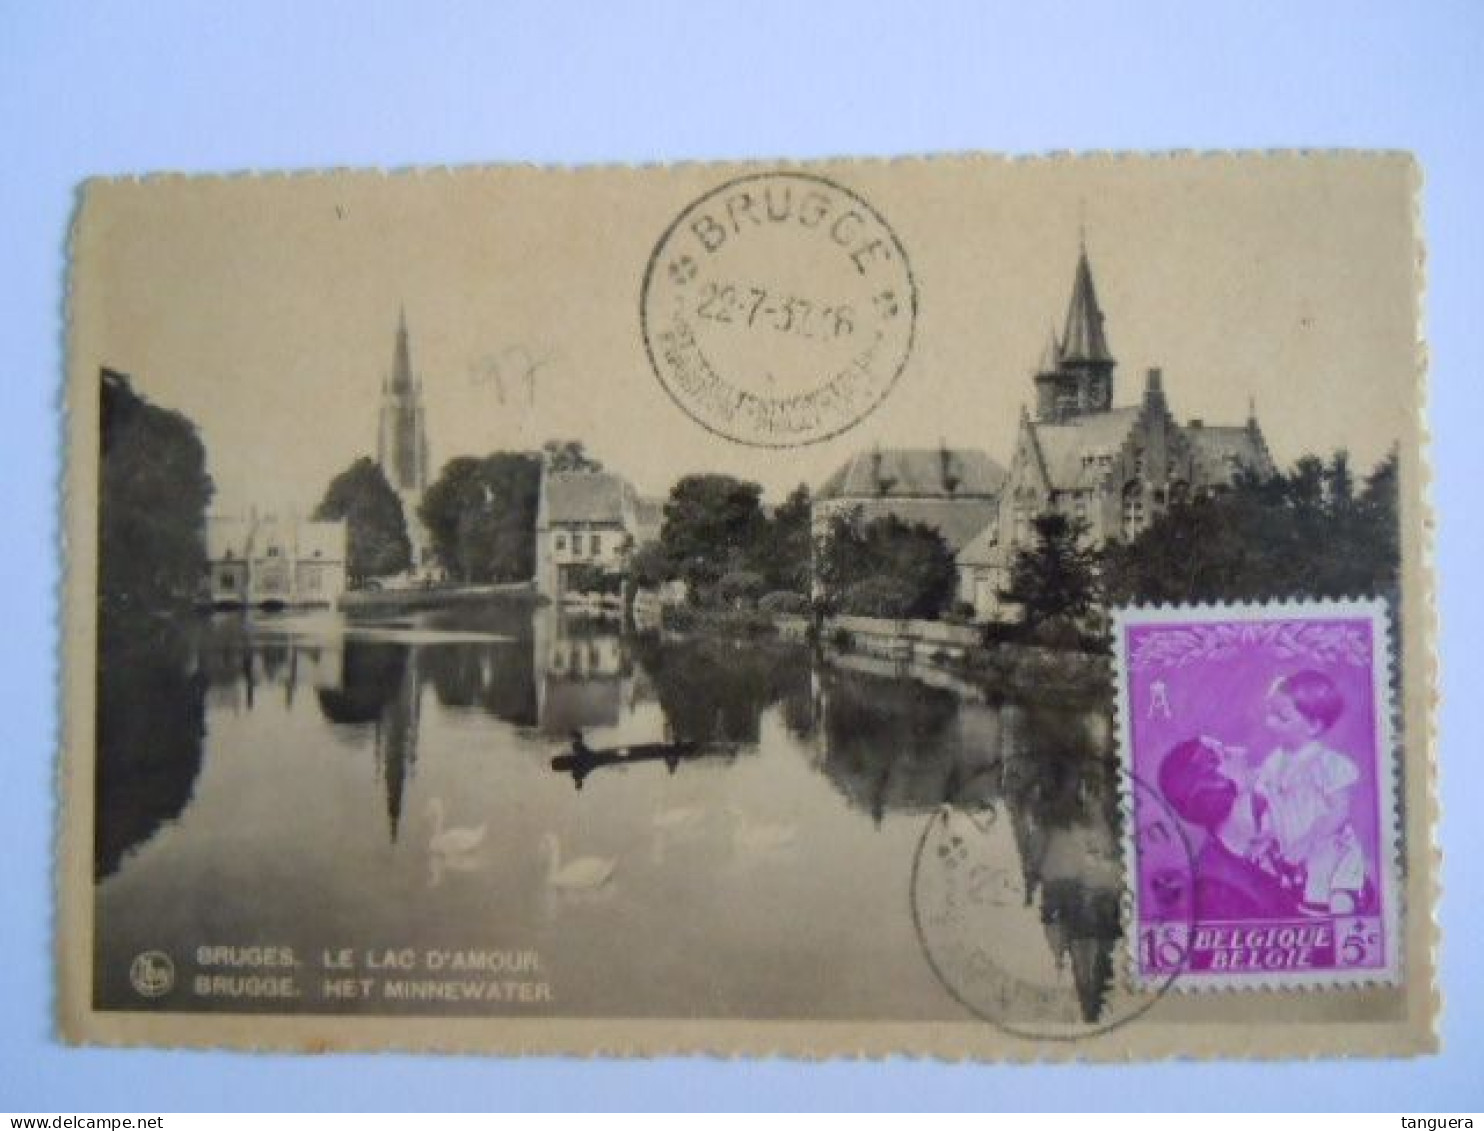 Belgie Reine Koningin Astrid 1937 Cob 447 Op Sur Cp Brugge Le Lac D'amour Het Minnewater (703) - Storia Postale